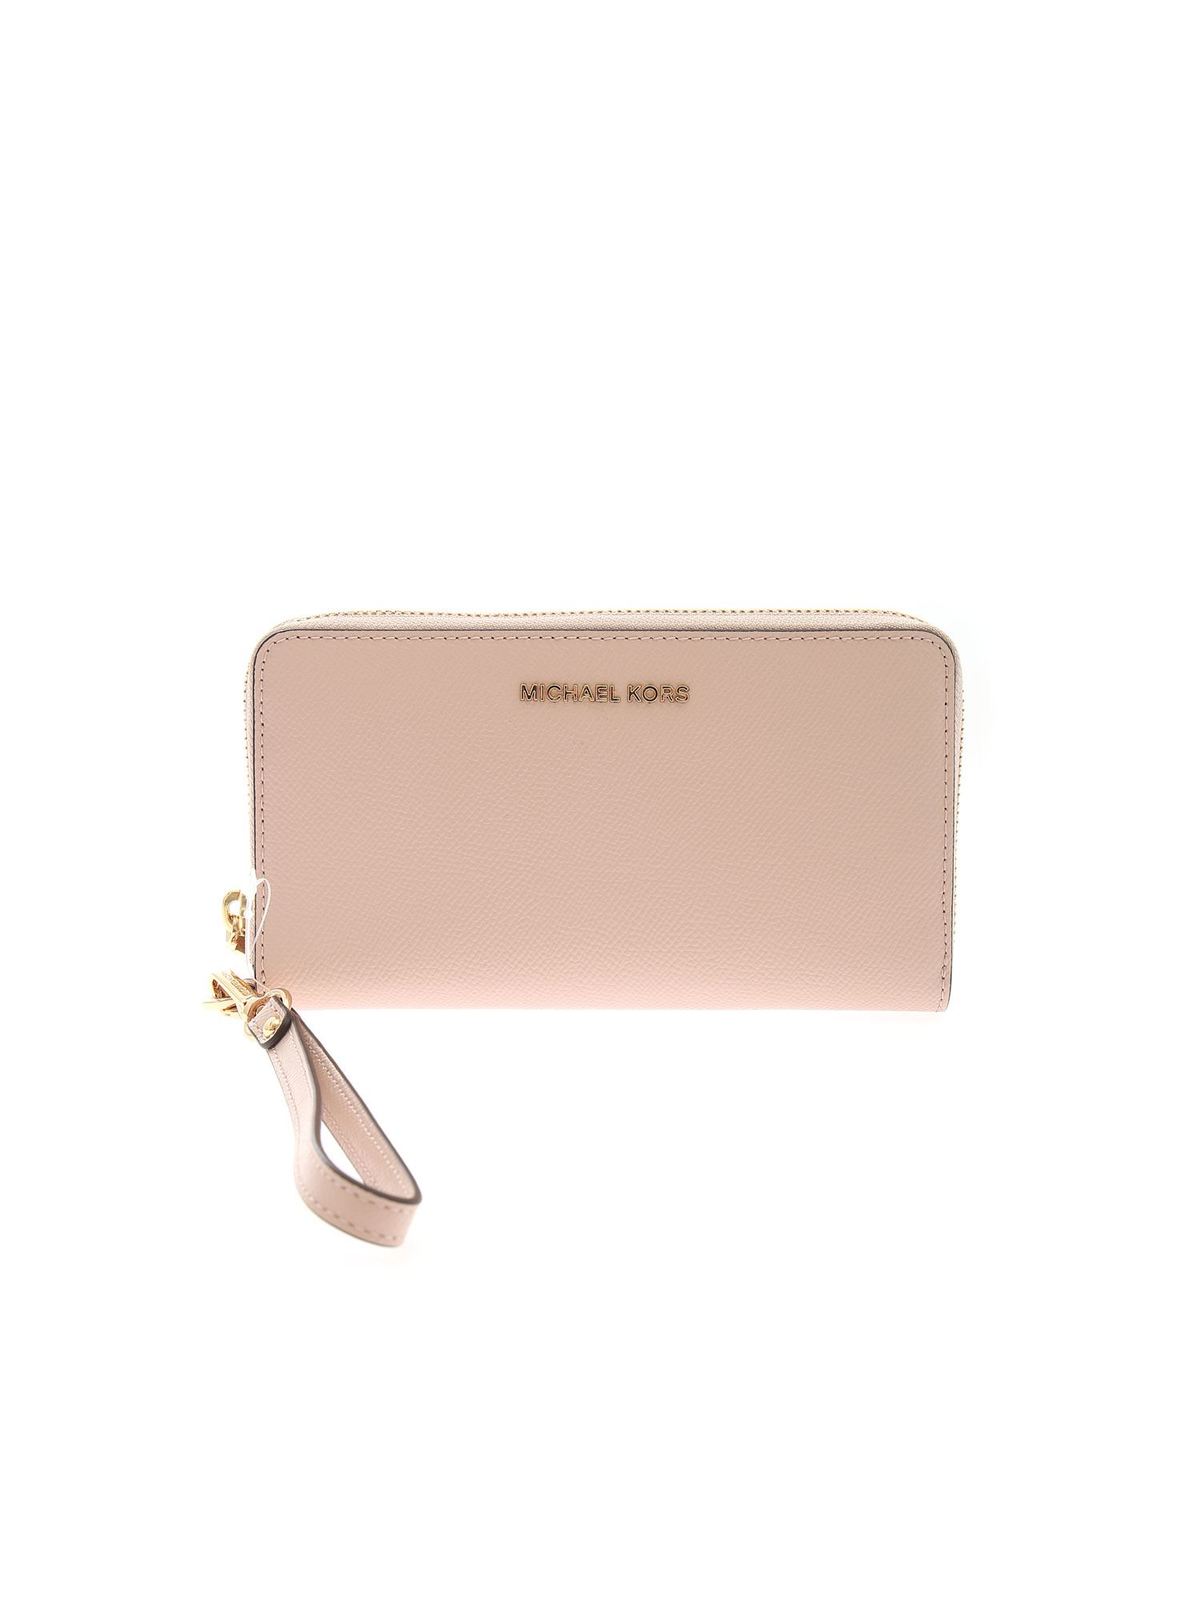 Wallets & purses Michael Kors - Jet Set wallet in Soft Pink color -  34F9GTVE3LSOFTPINK